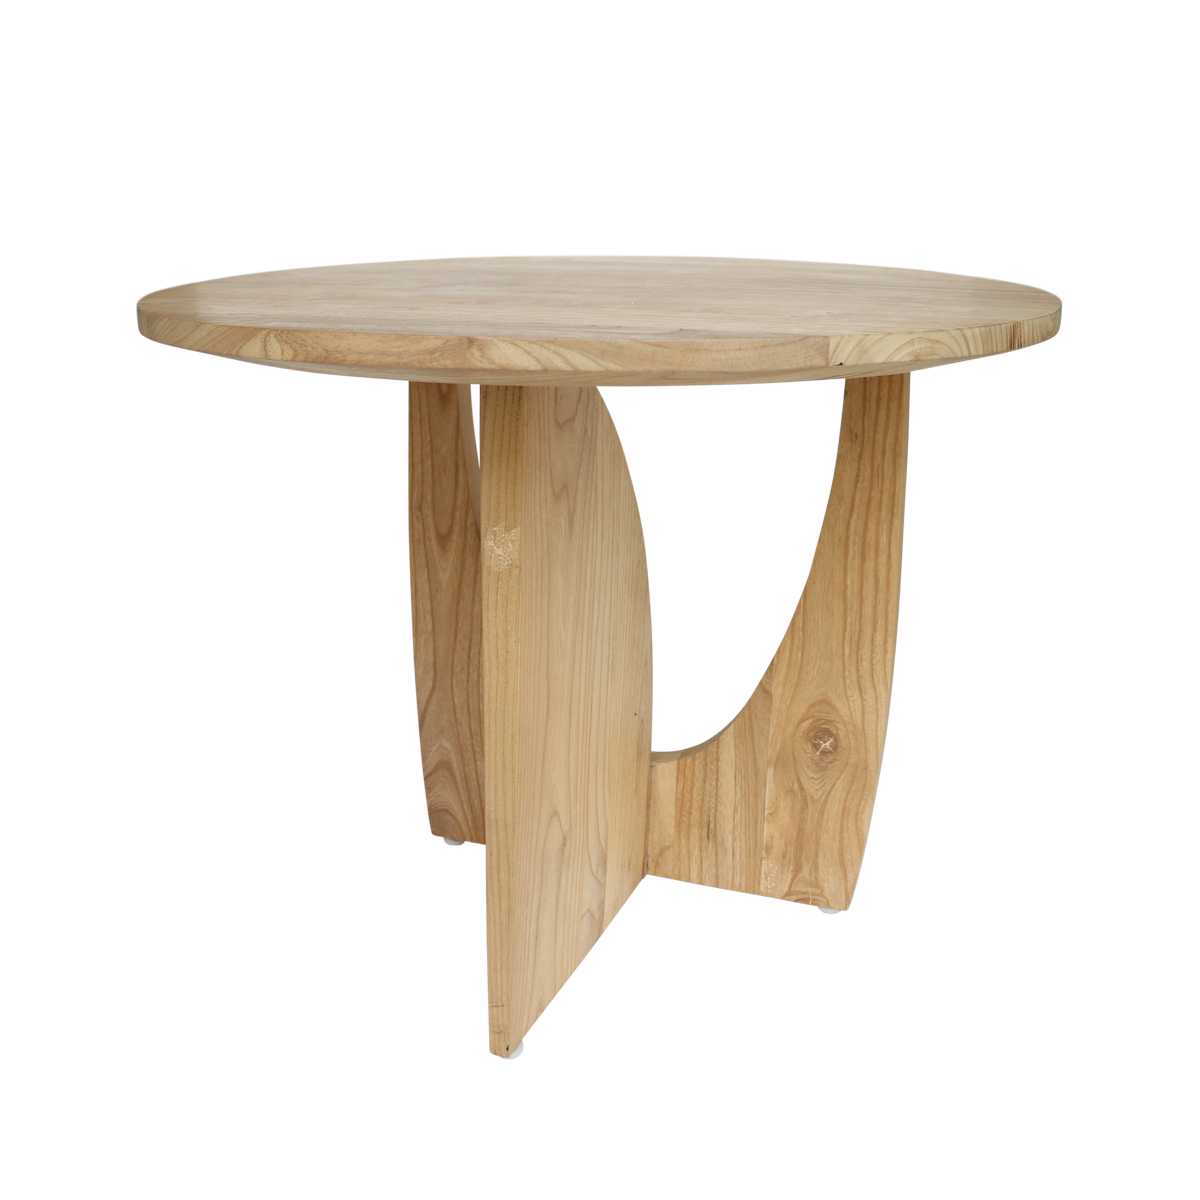 Urban Nature Culture :: Drewniany stolik Enkei okrągły śr. 60 cm